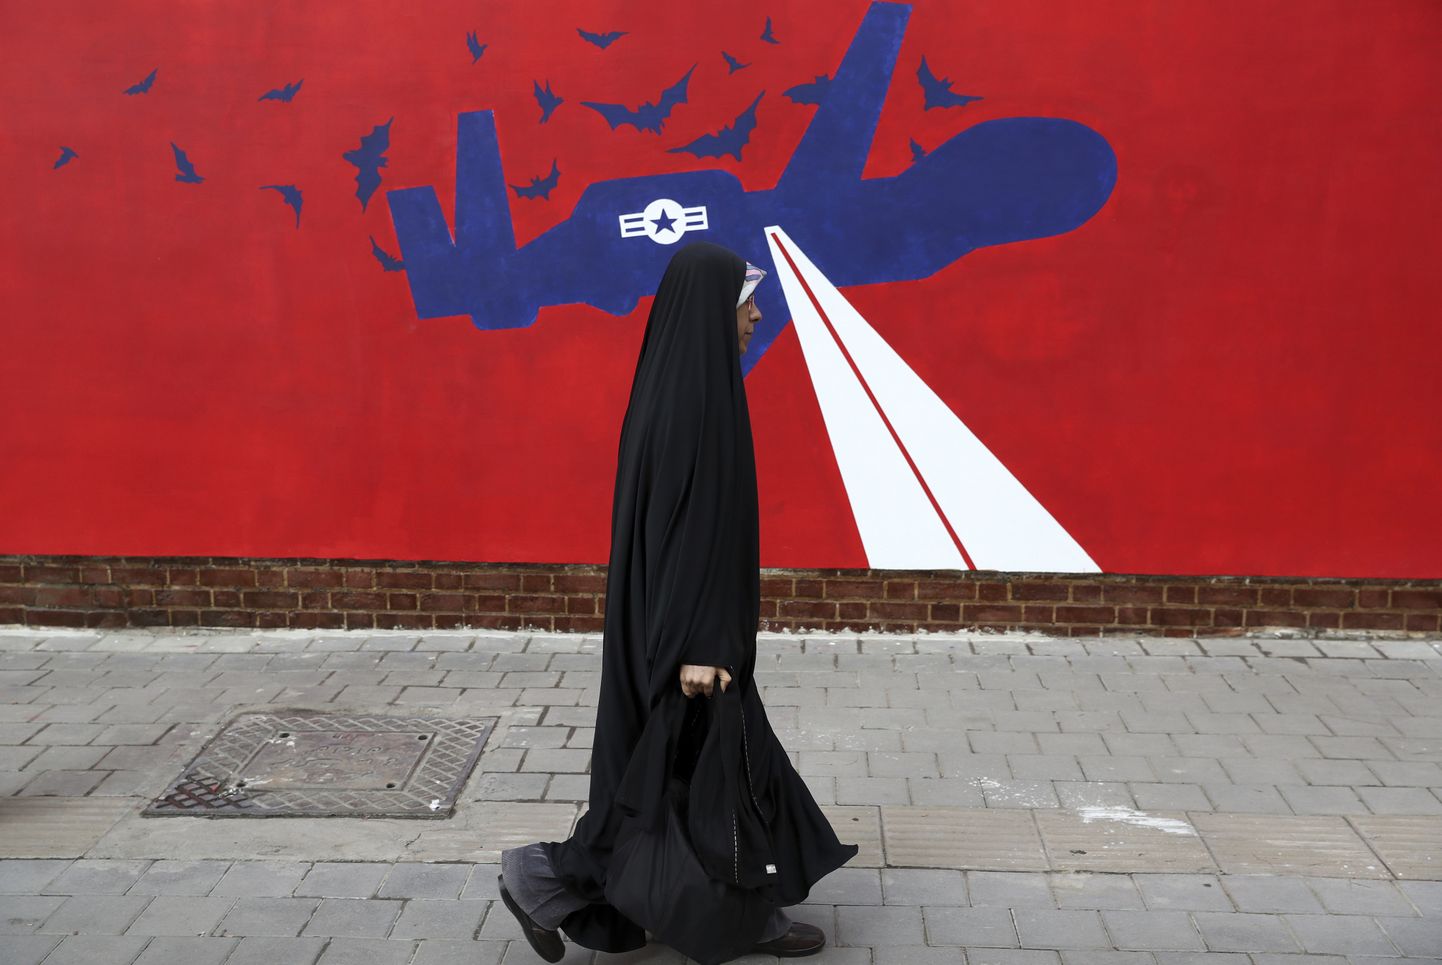 Naine kõndimas Teheranis mööda uuest pildist kunagise USA saatkonna seinal, kus näidatakse USA drooni Global Hawk allatulistamist.